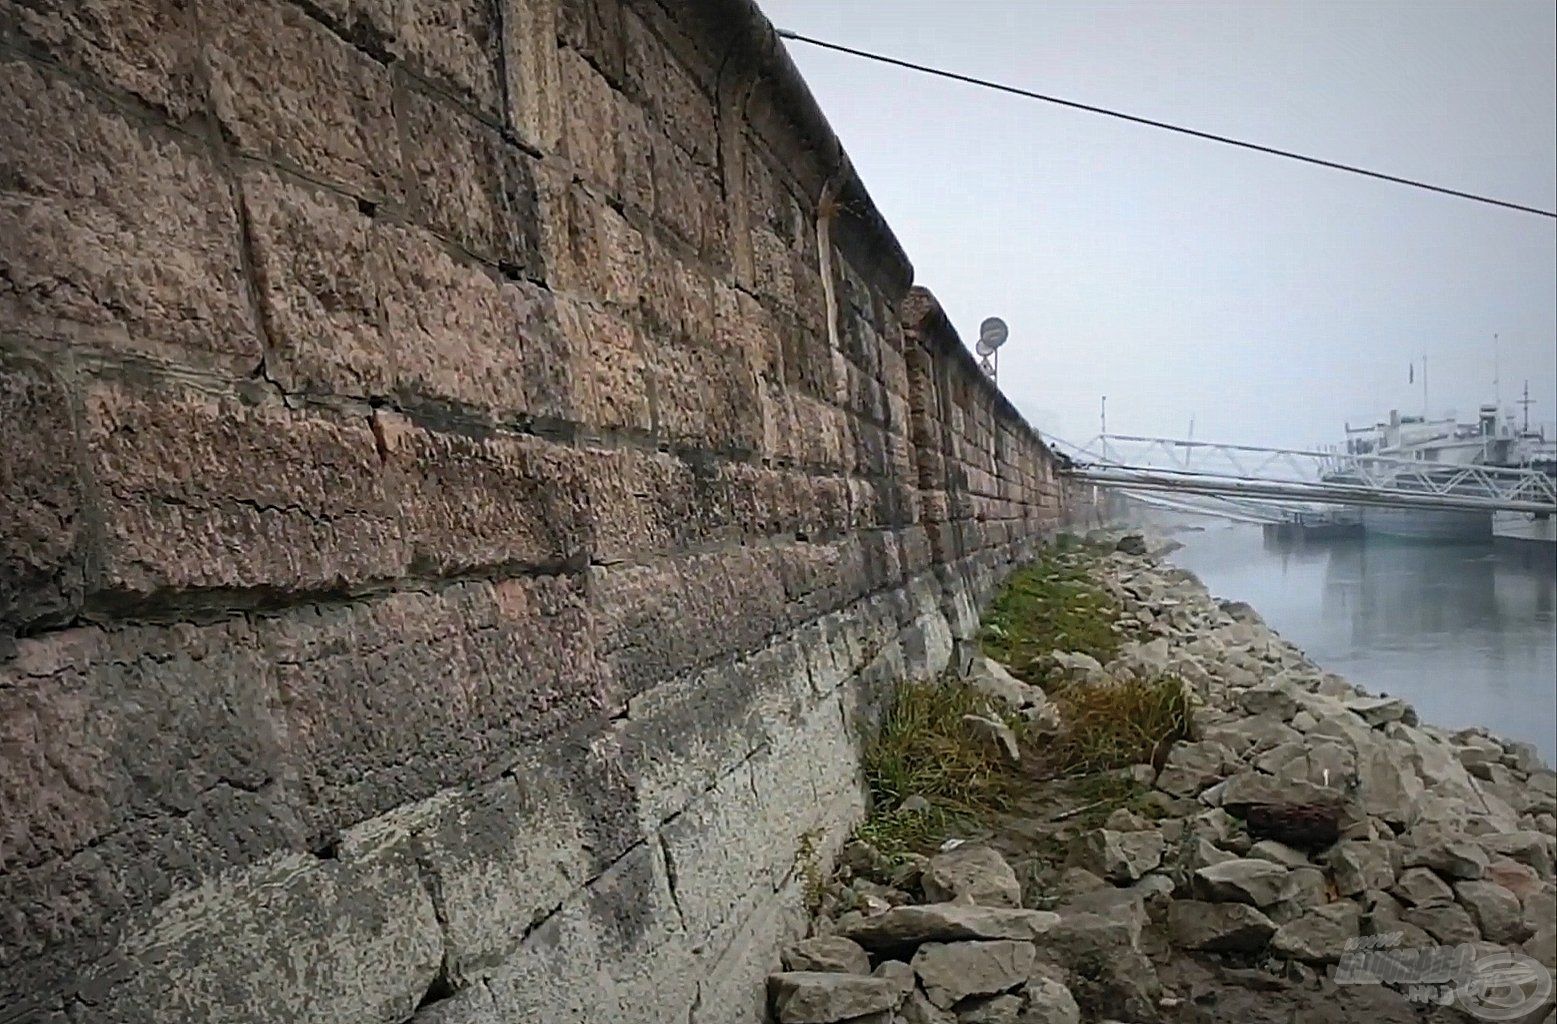 … és a világörökségi oltalom alatt álló, mintegy 4 méter magas kőfal övezi a Duna partját